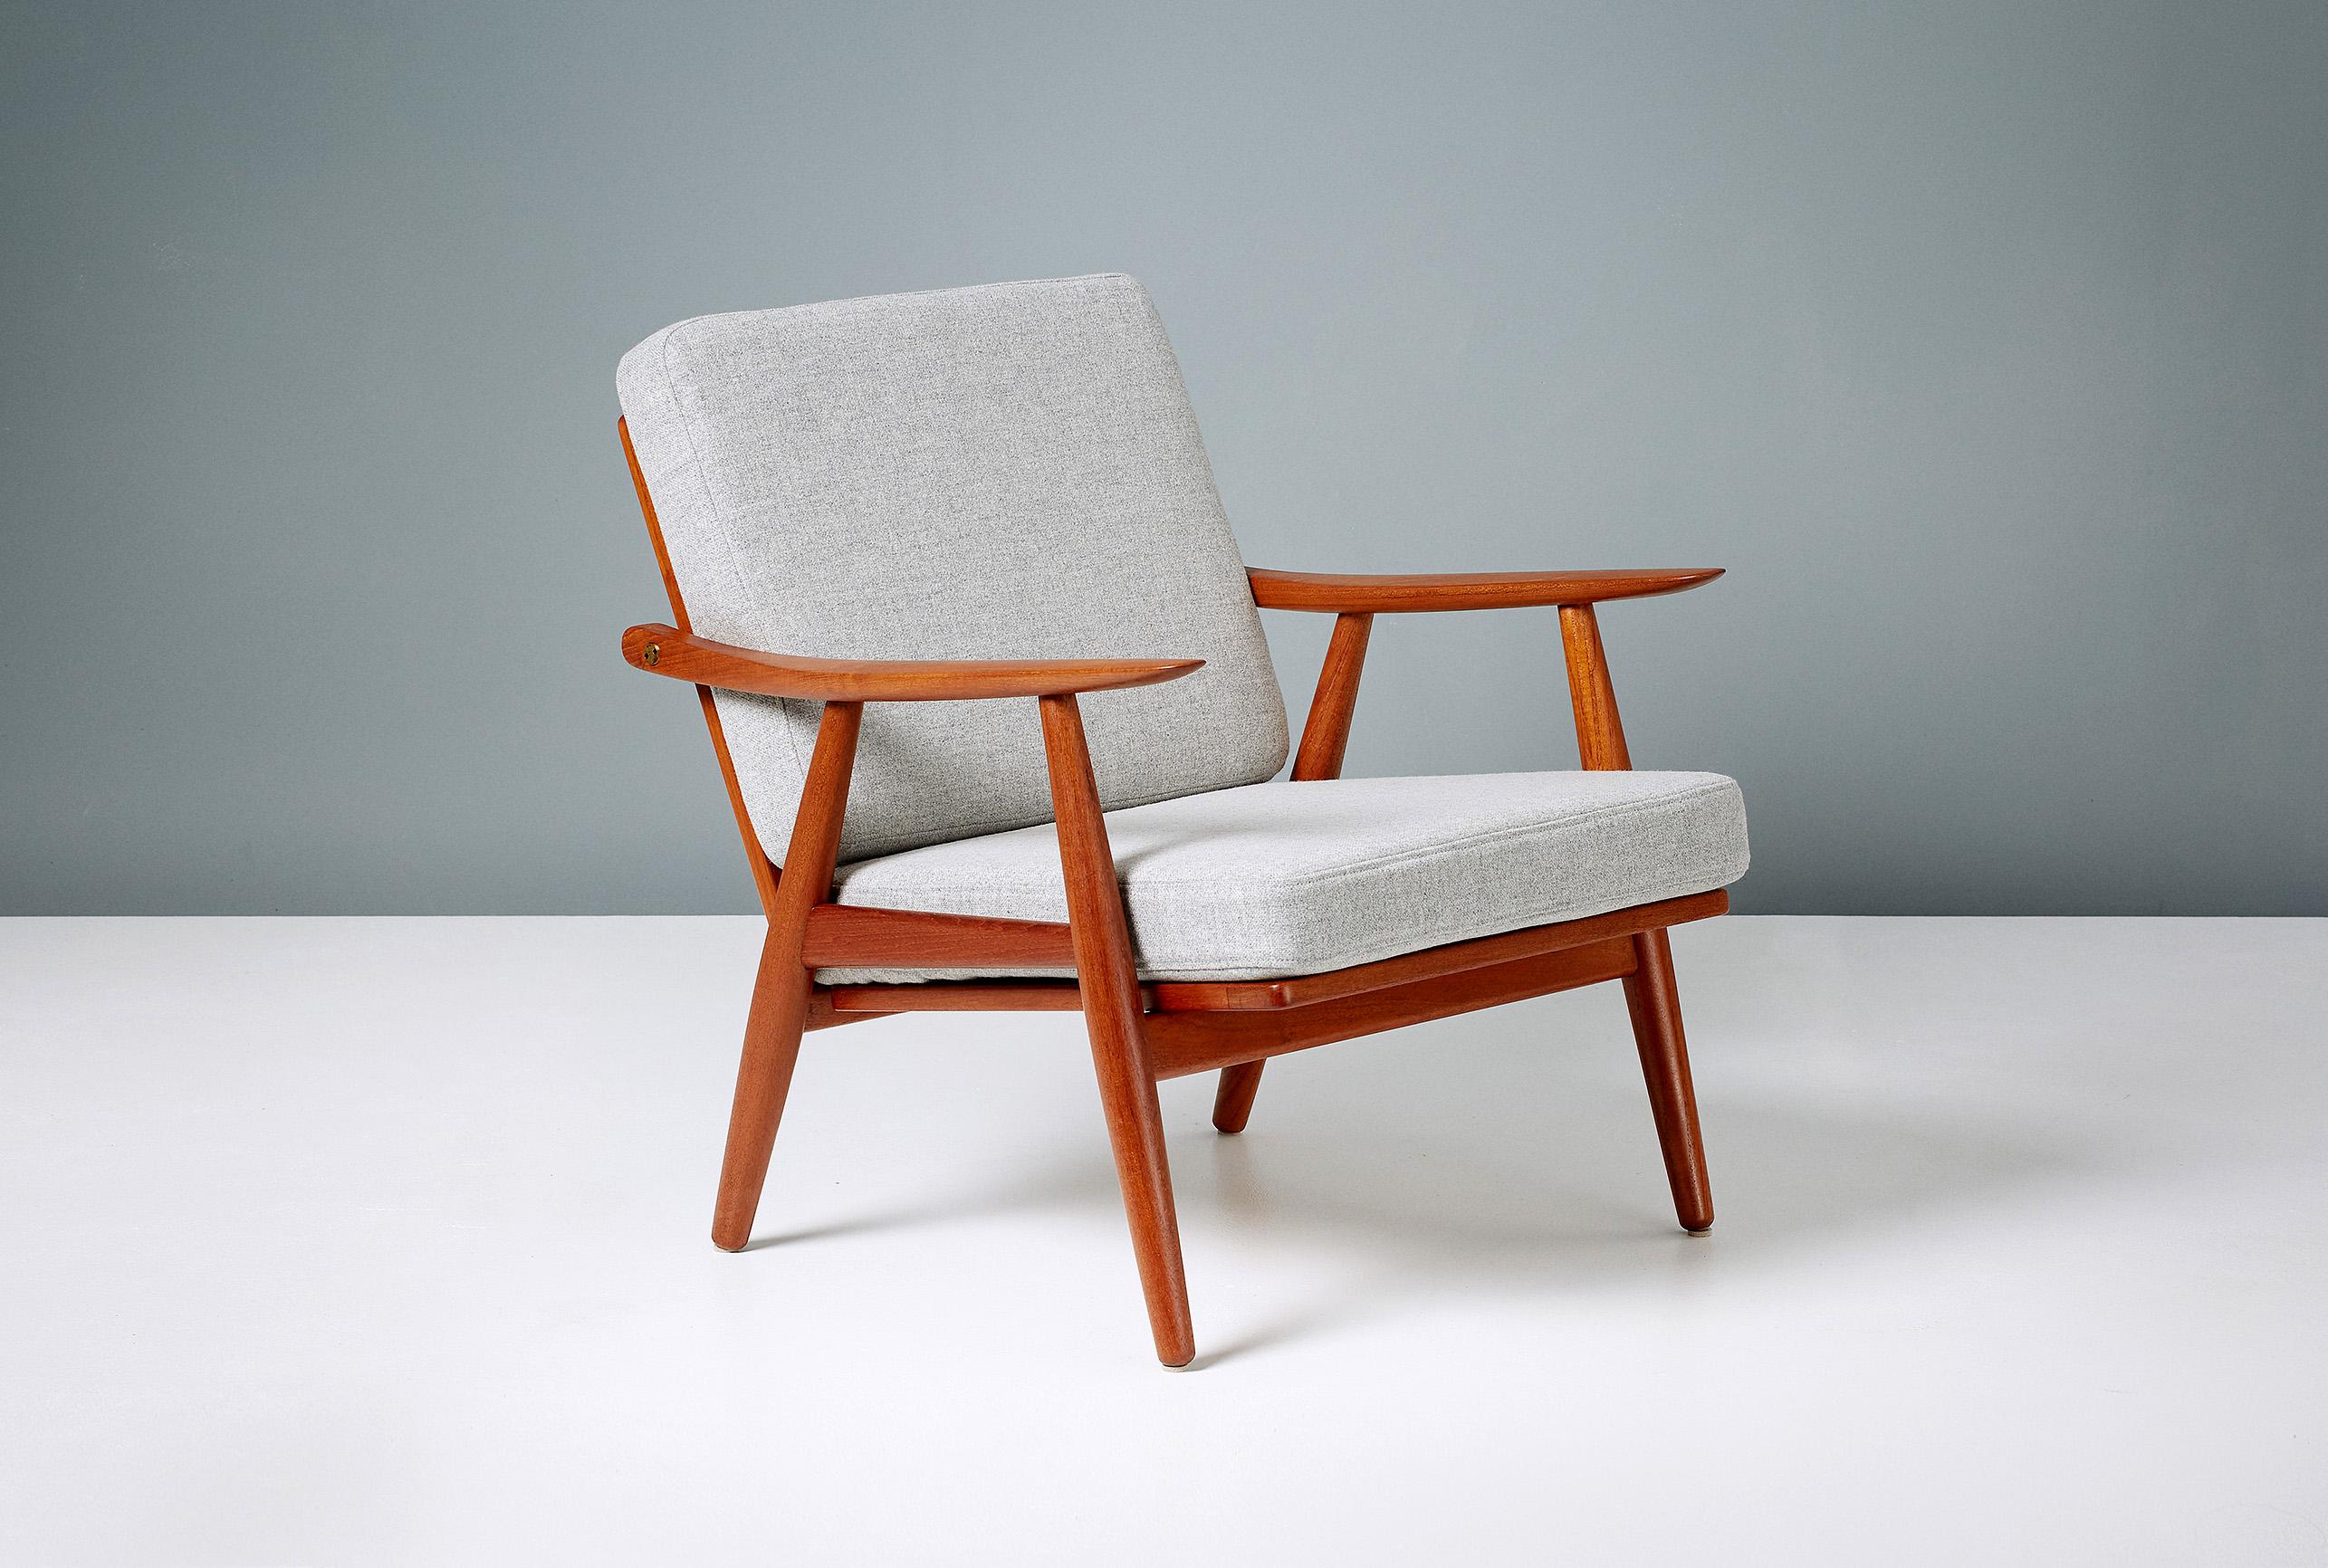 Hans Wegner
GE-270 Liegestühle, 1956

Klassische Wegner-Sessel, hergestellt von GETAMA in Gedsted, Dänemark, in den 1950er Jahren. Restaurierter Teakholzrahmen mit freiliegenden Messingbeschlägen. Neue Schaumstoffkissen, bezogen mit grauem